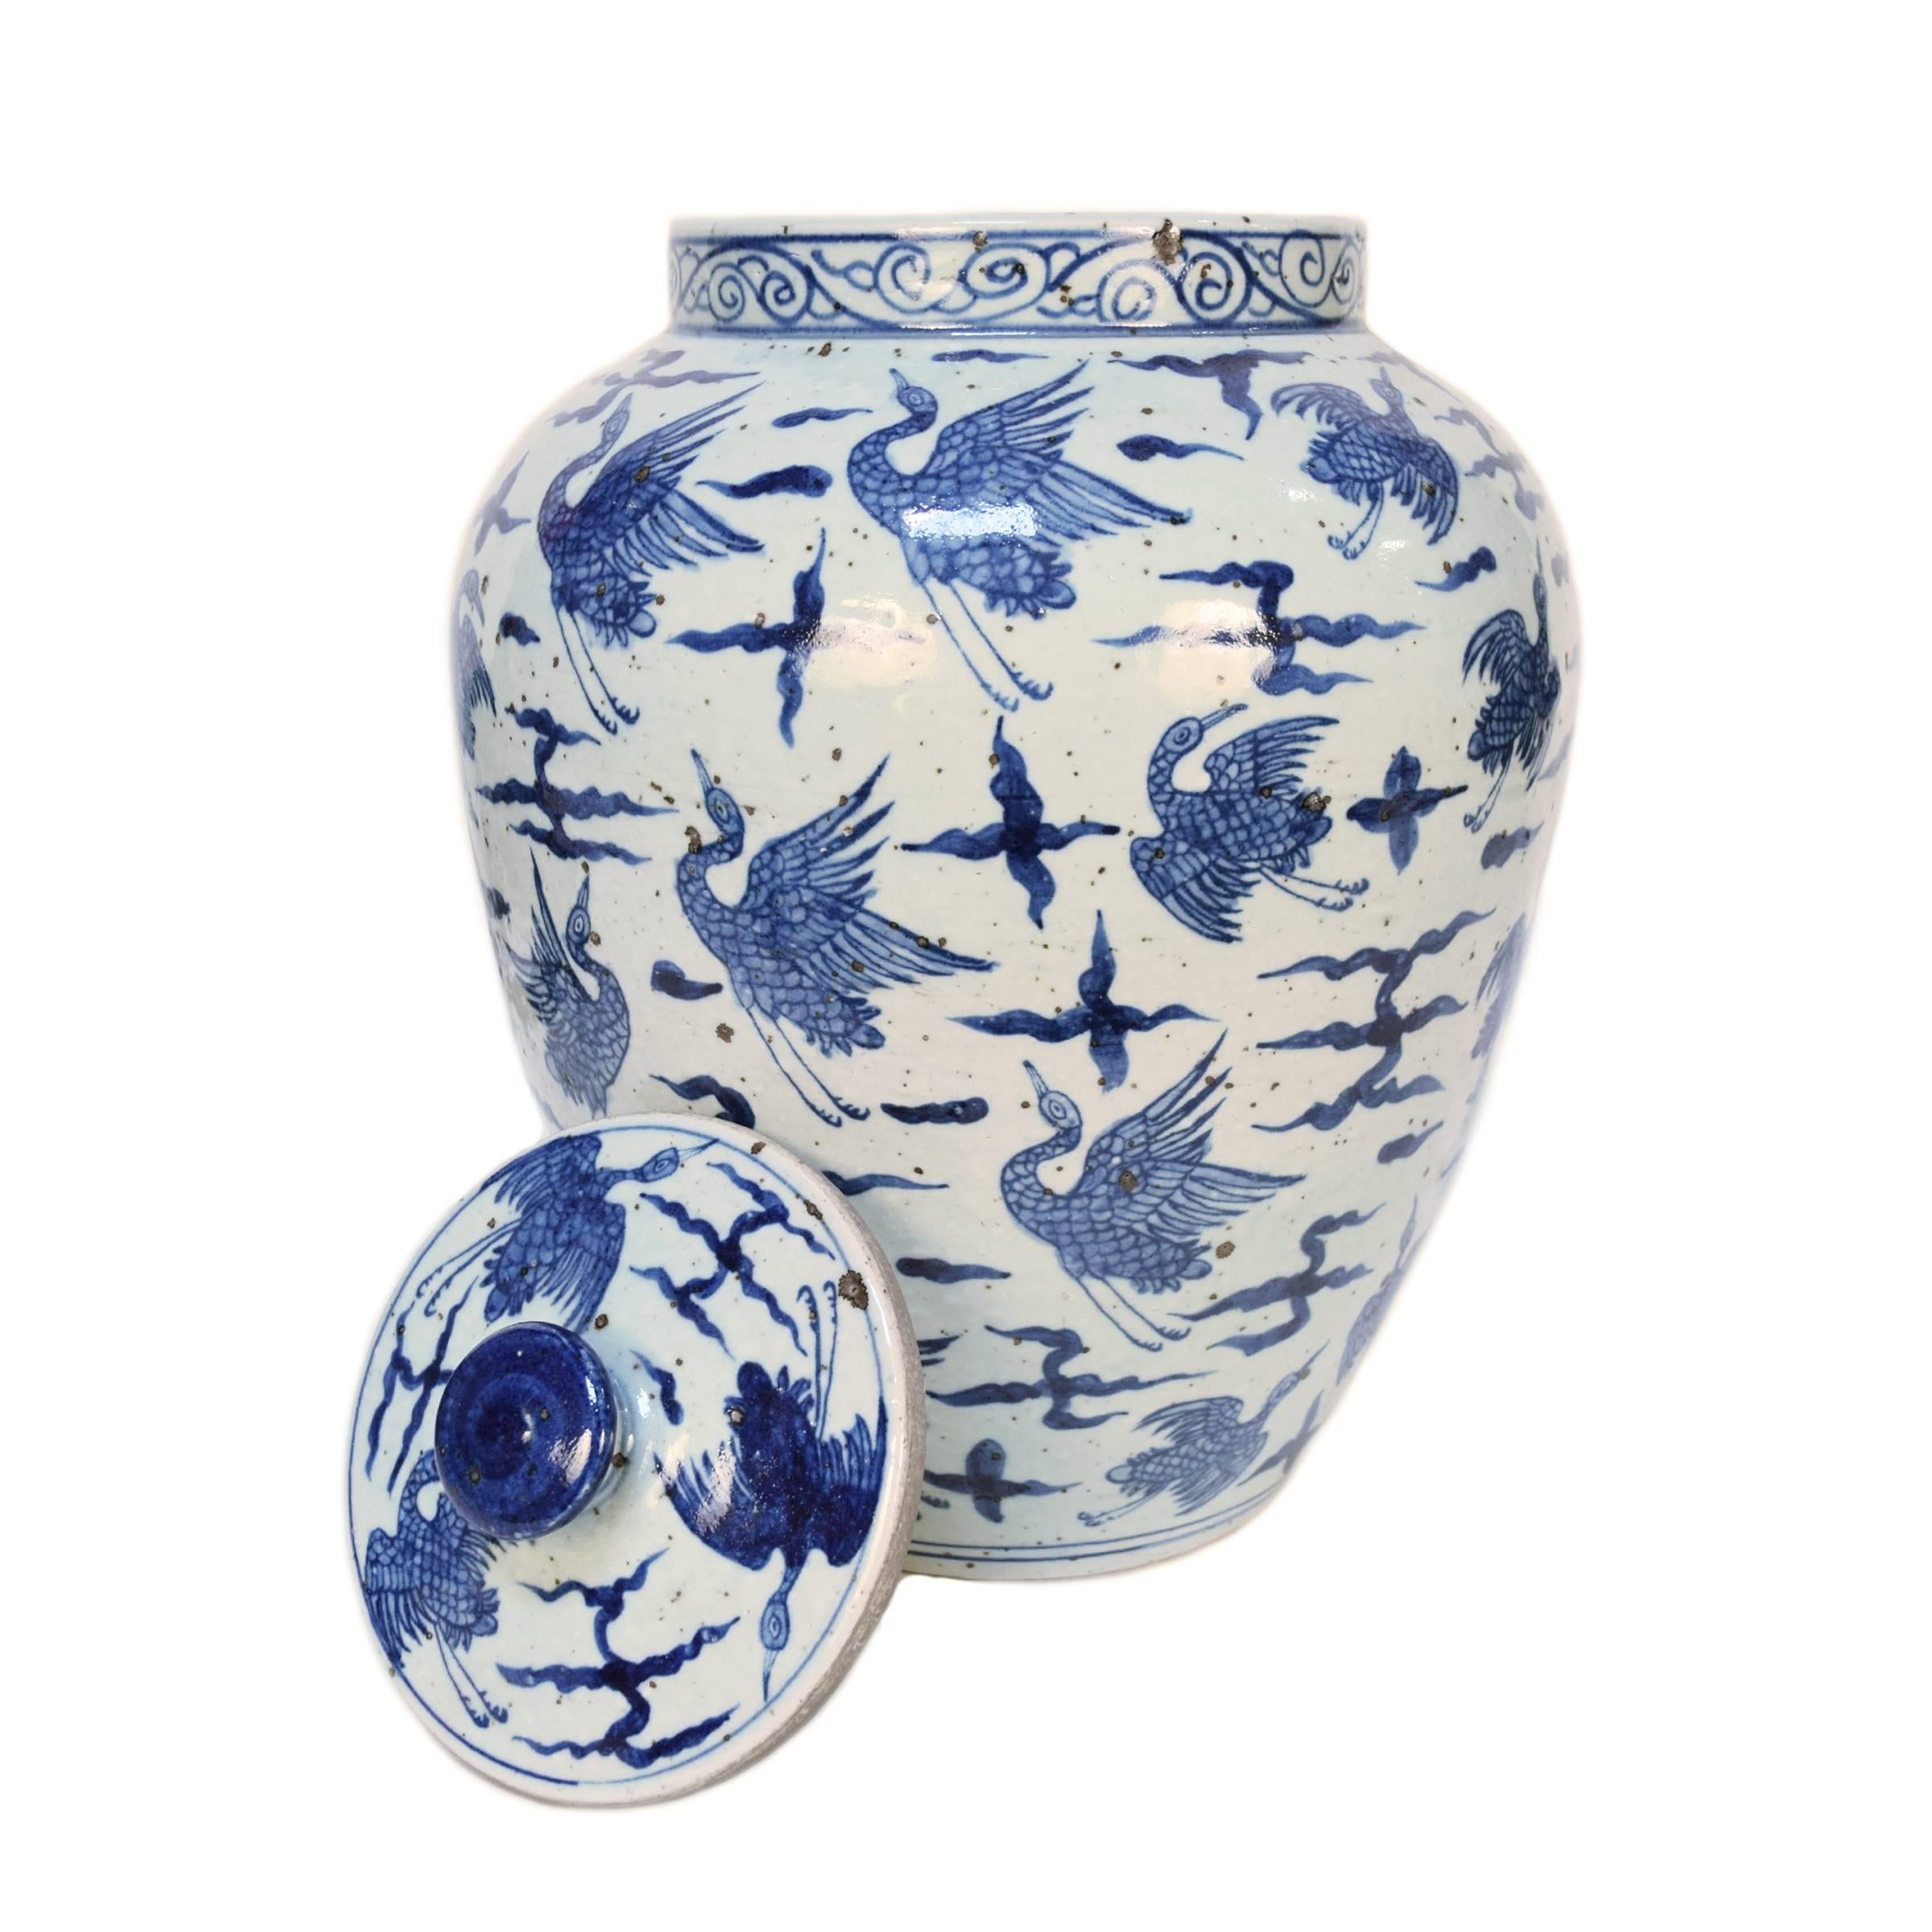 Glazed Blue and White Chinese Porcelain Vase